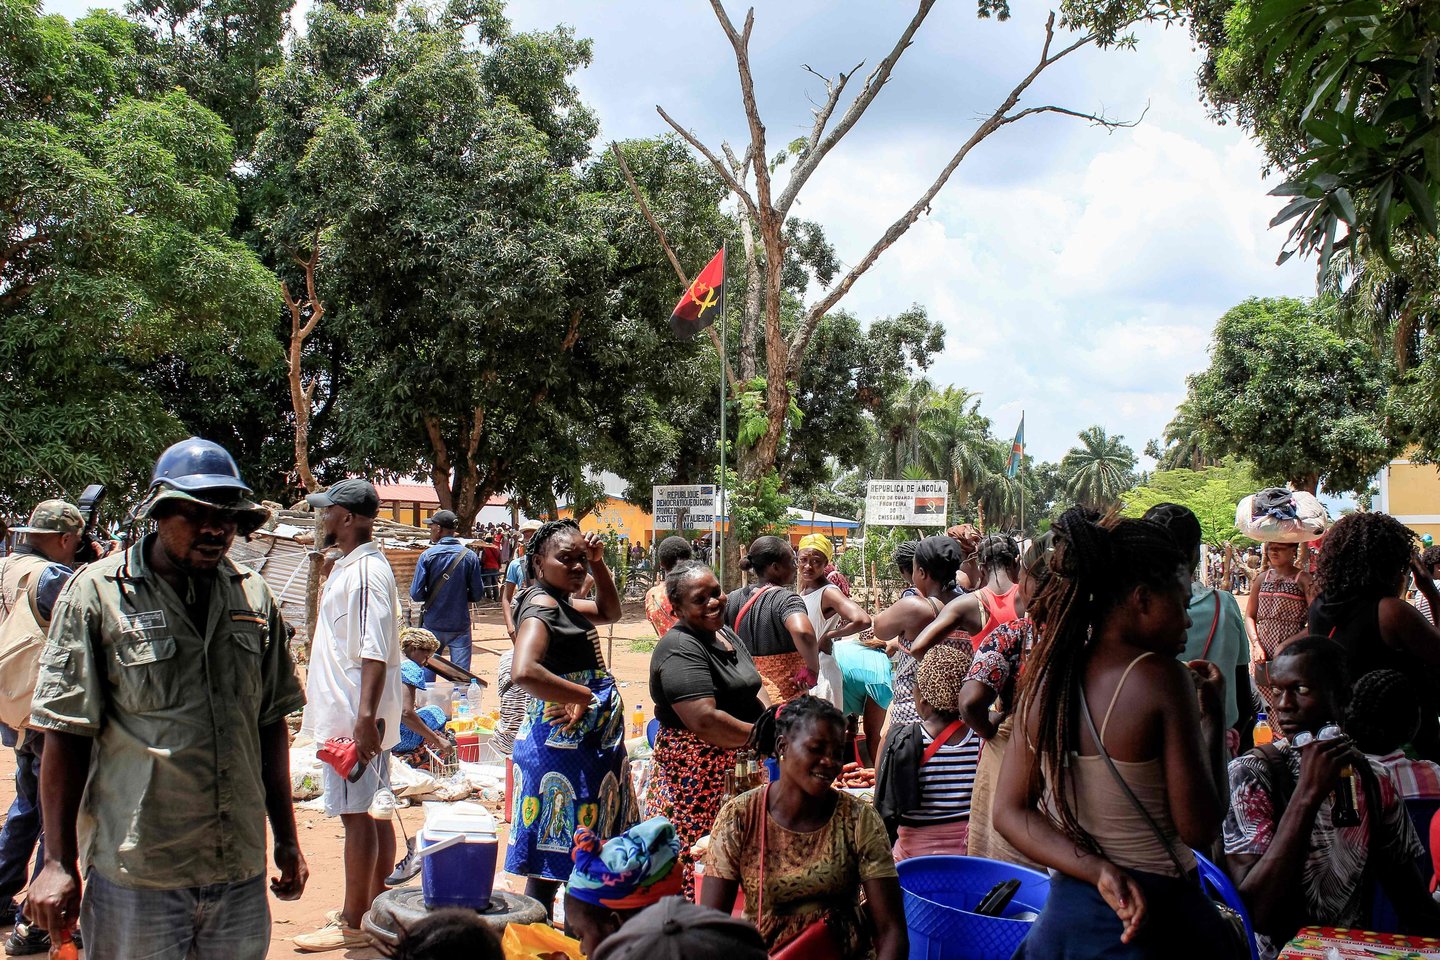  Kongo sukilėliai nužudė 15 civilių ir pagrobė dešimtis vaikų per ataką naujausio Ebolos karštligės protrūkio židinyje, sekmadienį pranešė šalies kariškiai.<br> AFP/Scanpix nuotr.